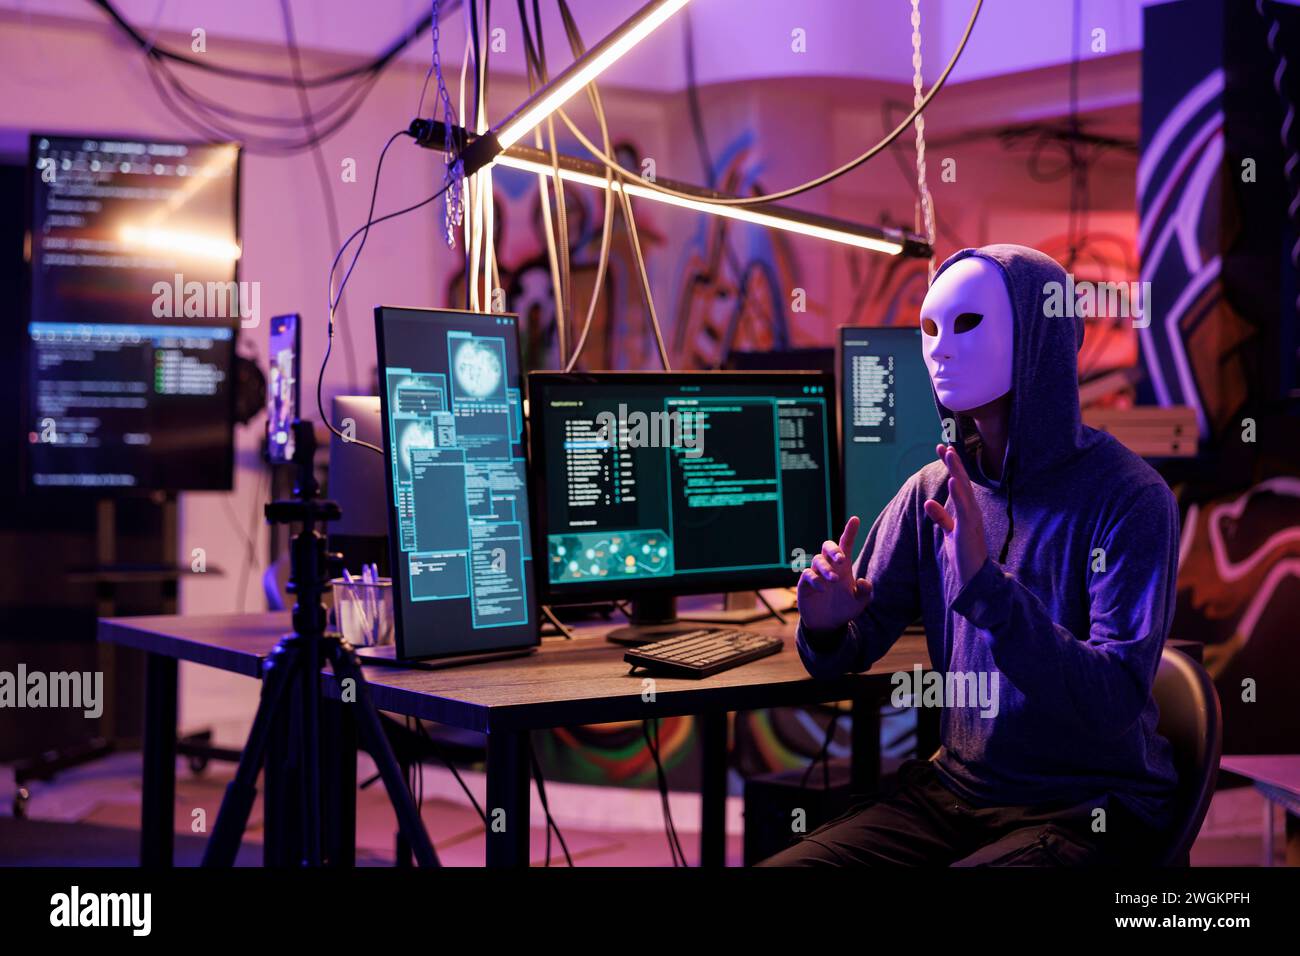 Hacker in anonymer Maske, die Videos mit Online-Betrug auf dem Mobiltelefon aufnimmt, während er illegale Aktivitäten ausübt. Internet-Betrüger-Streaming-Bedrohung, um Geld und Datenschutzinformationen zu erhalten Stockfoto